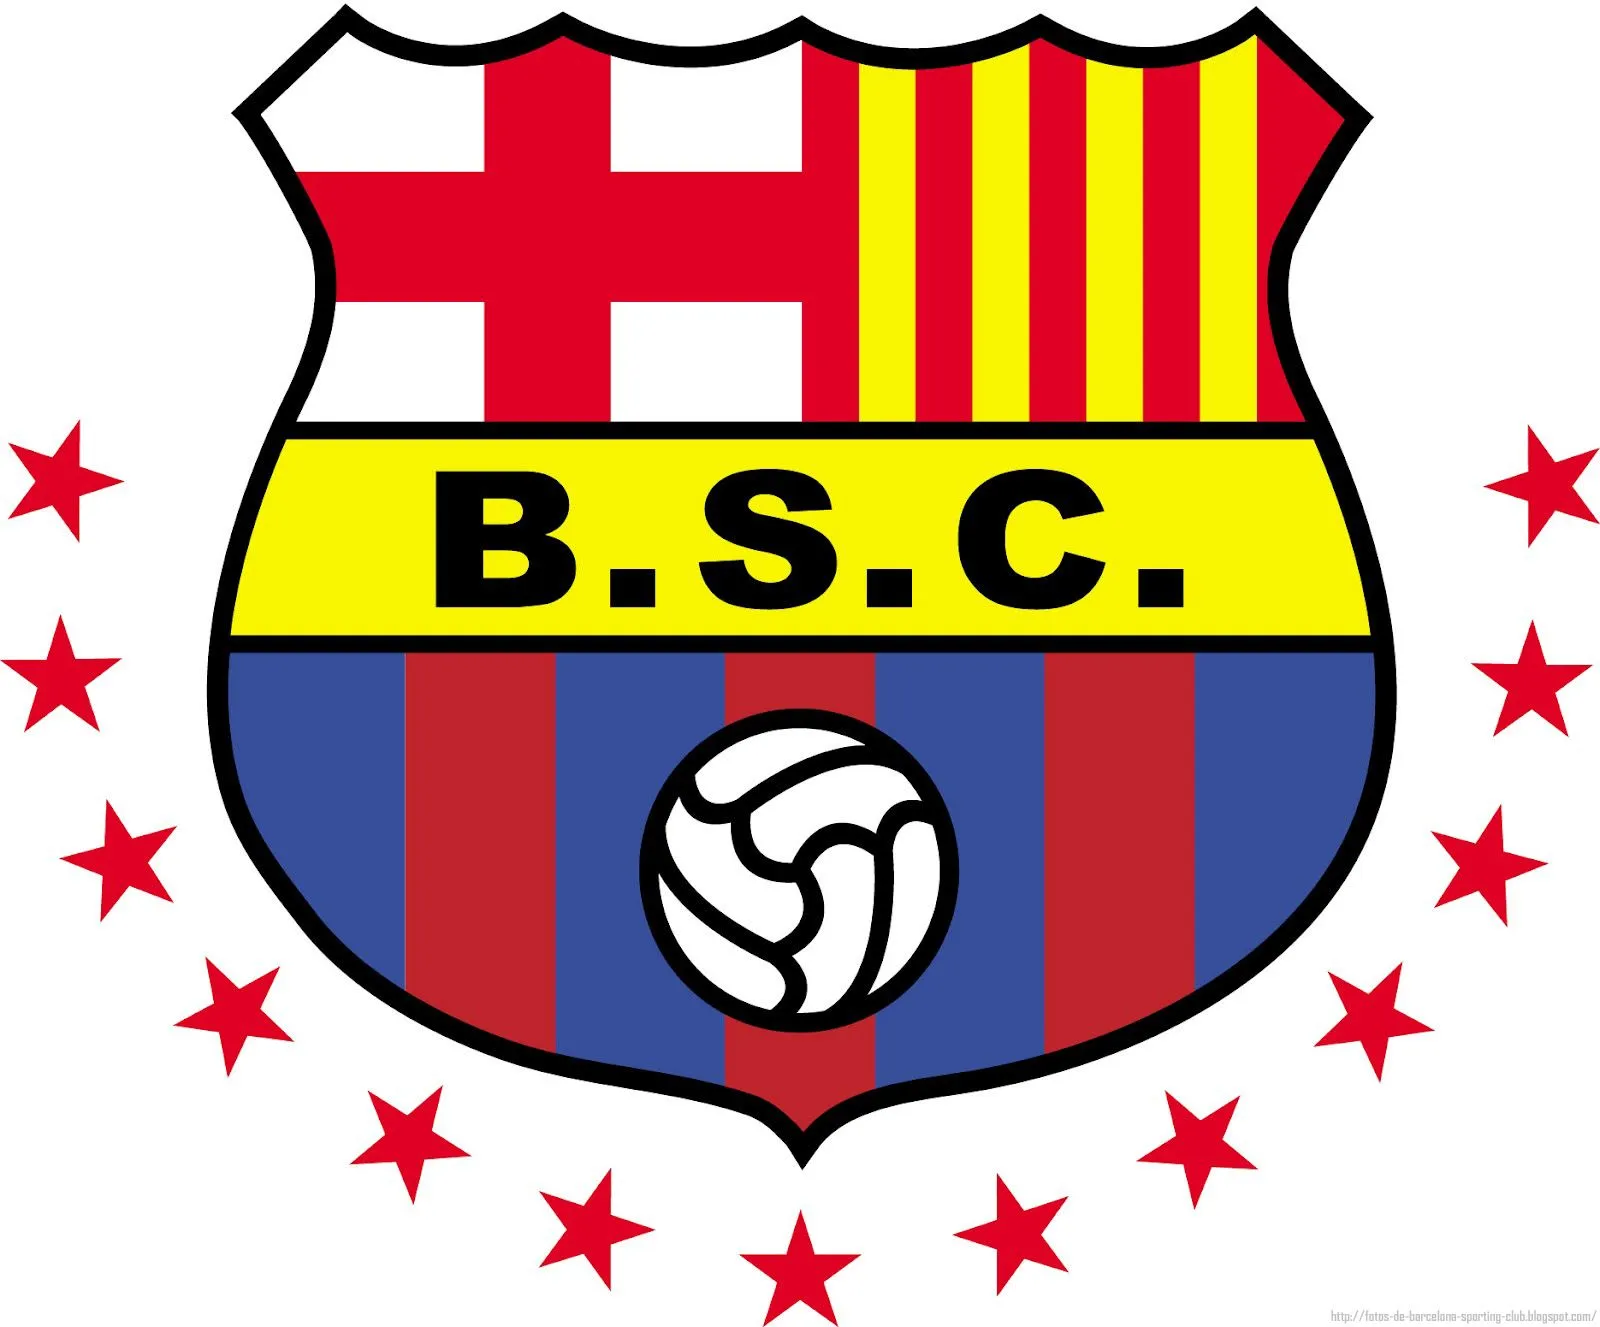 Imágenes Vectoriales Barcelona Sporting Club | BANCO DE IMÁGENES ...